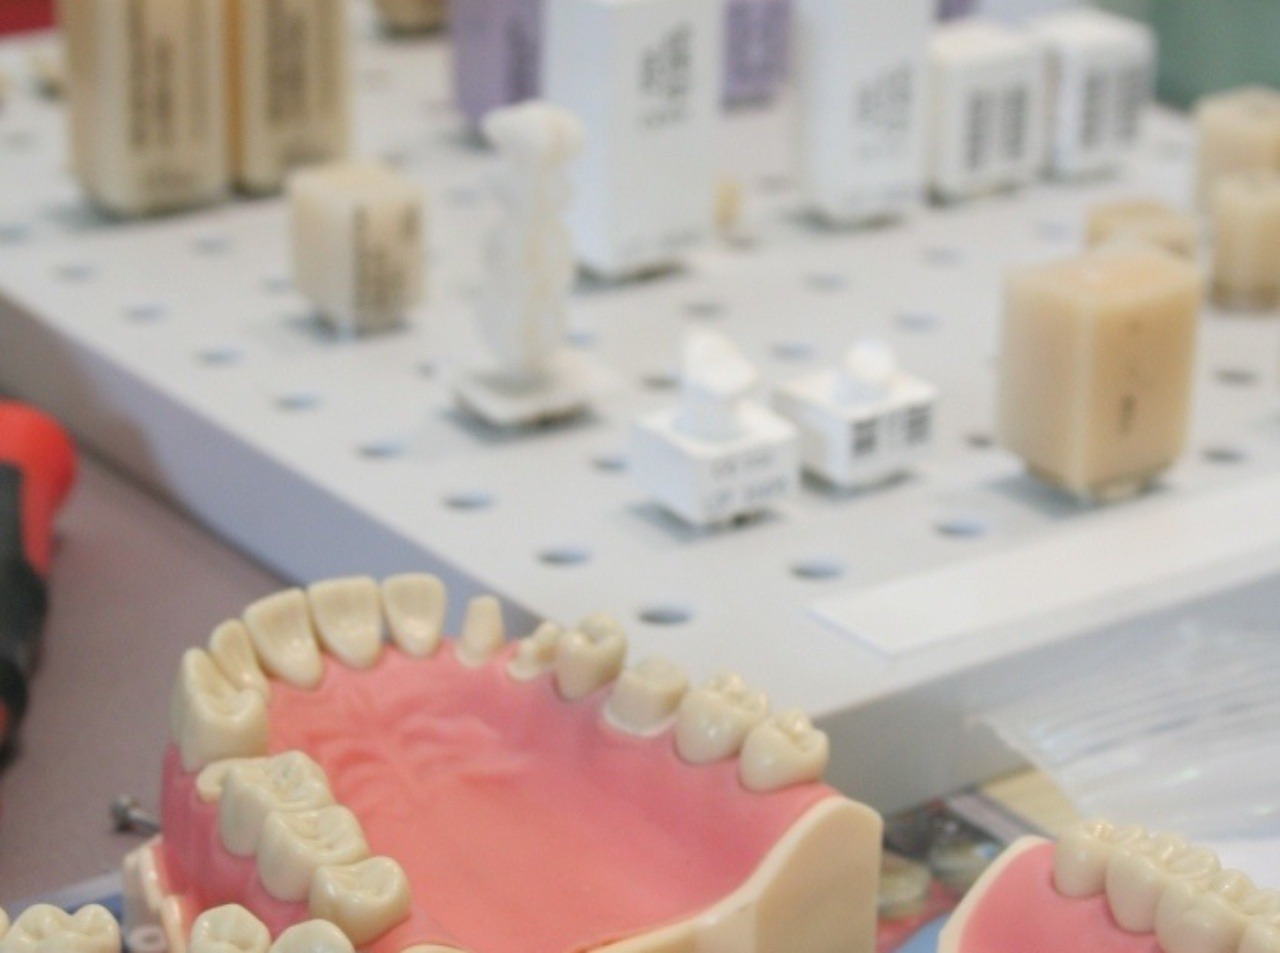 Zdravé a krásne zuby sú devízou, ktorá posúva celkový vzhľad na vyššiu úroveň.